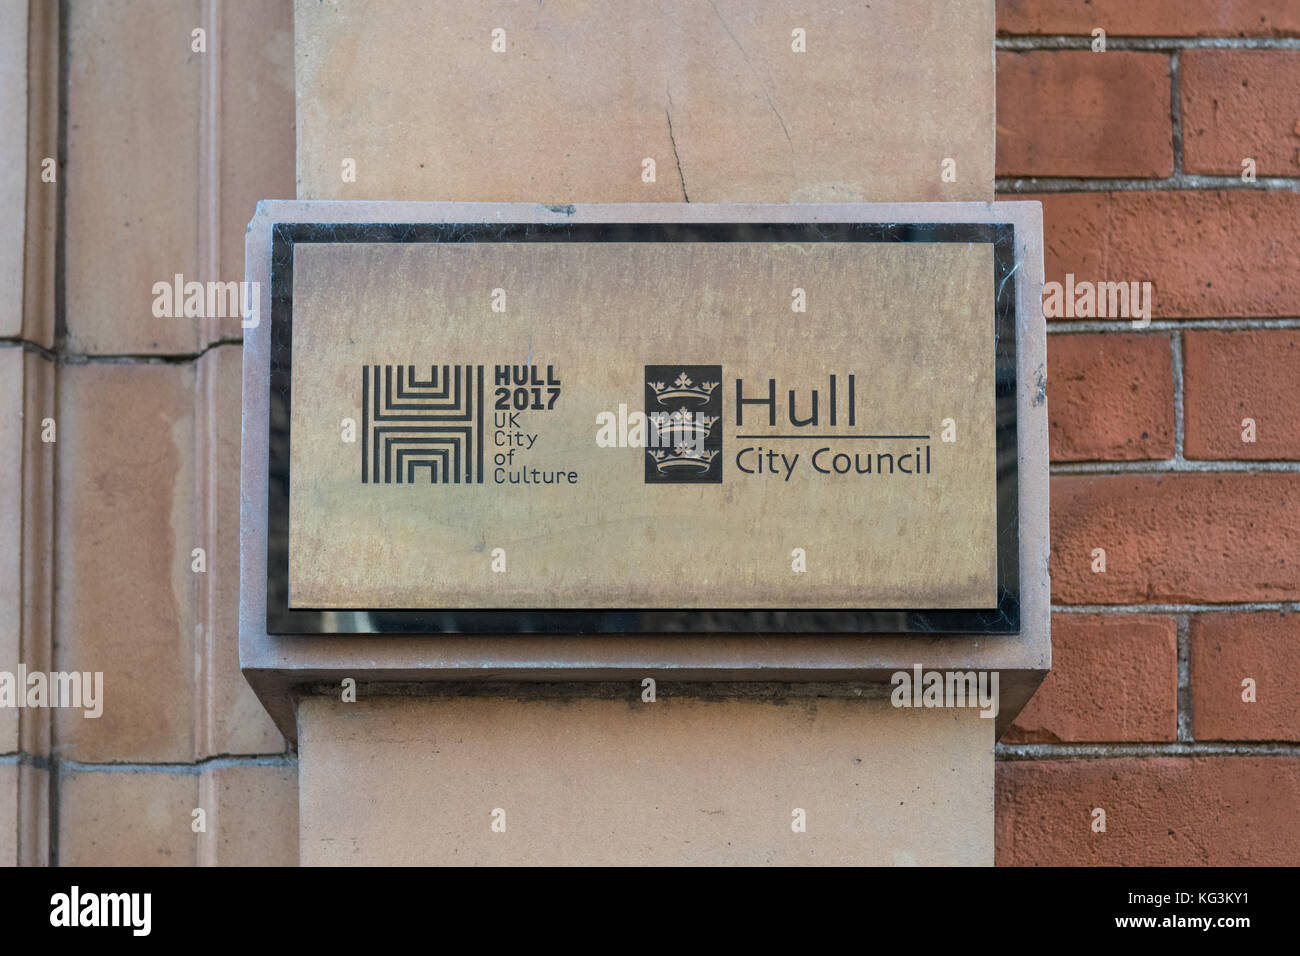 Hull 2017 UK City of Culture und Hull City Council unterzeichnen vor den ratsbüros, High Street, Hull, England, Großbritannien Stockfoto